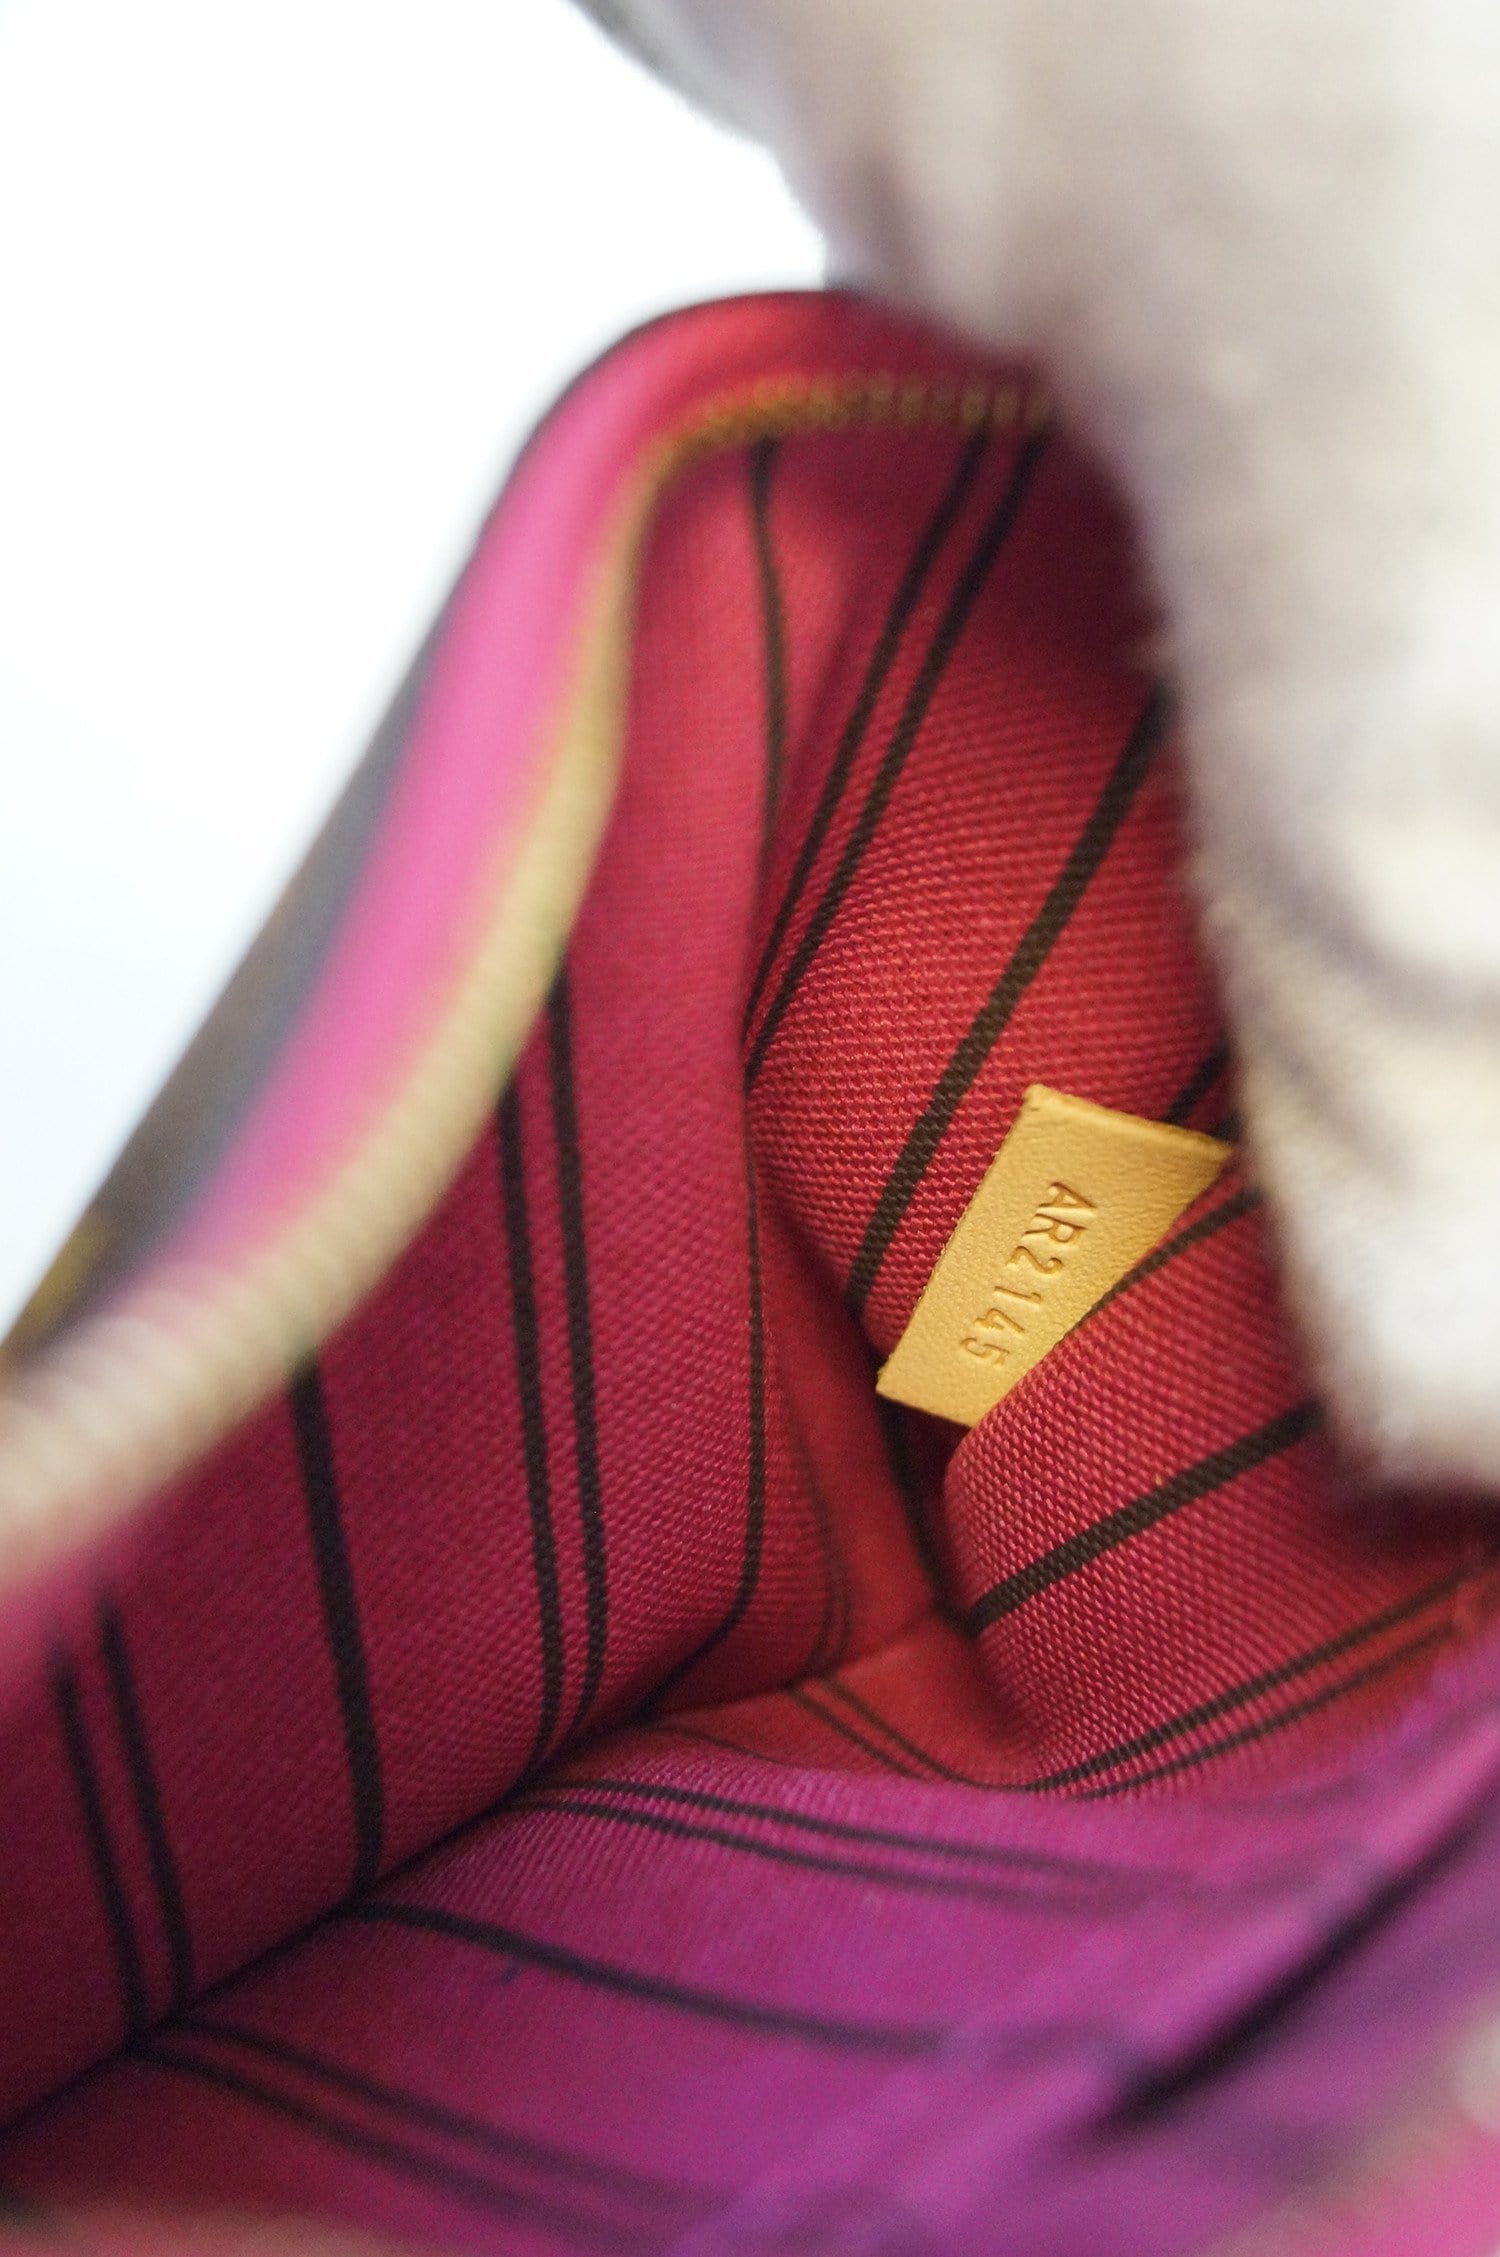 23 - Louis Vuitton Monogram Pouch for Neverfull MM Wristlet Cerise -  Monogram - M51847 – dct - Pouch - Vuitton - Compiegne - Clutch - Bag -  ep_vintage luxury Store - Louis